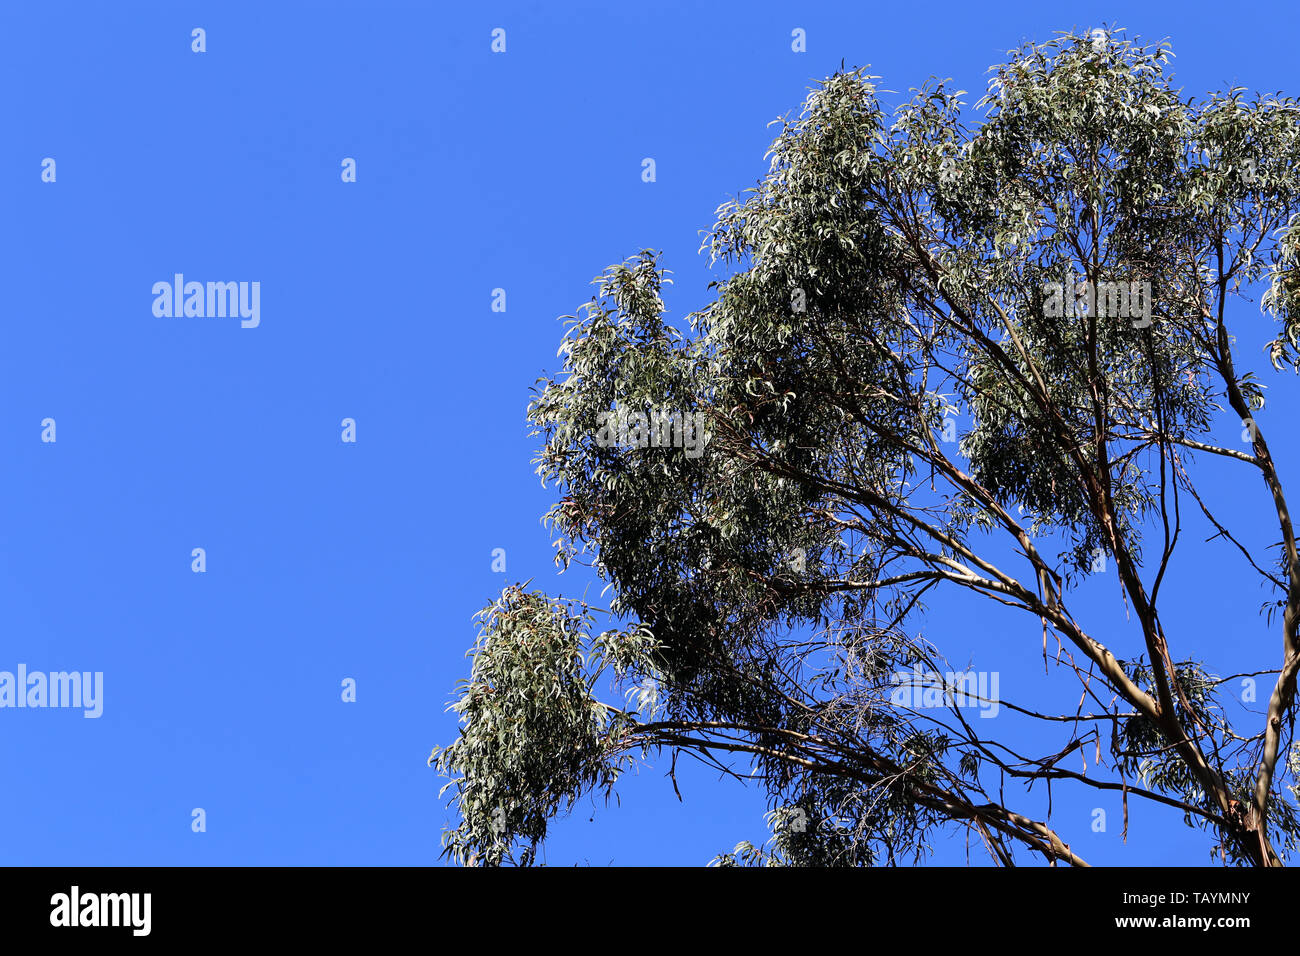 Bellissimo albero rami e foglie nell'isola di Madeira, Portogallo. Questo è molto semplice foto con il cielo azzurro e gli alberi fotografata da sotto Foto Stock